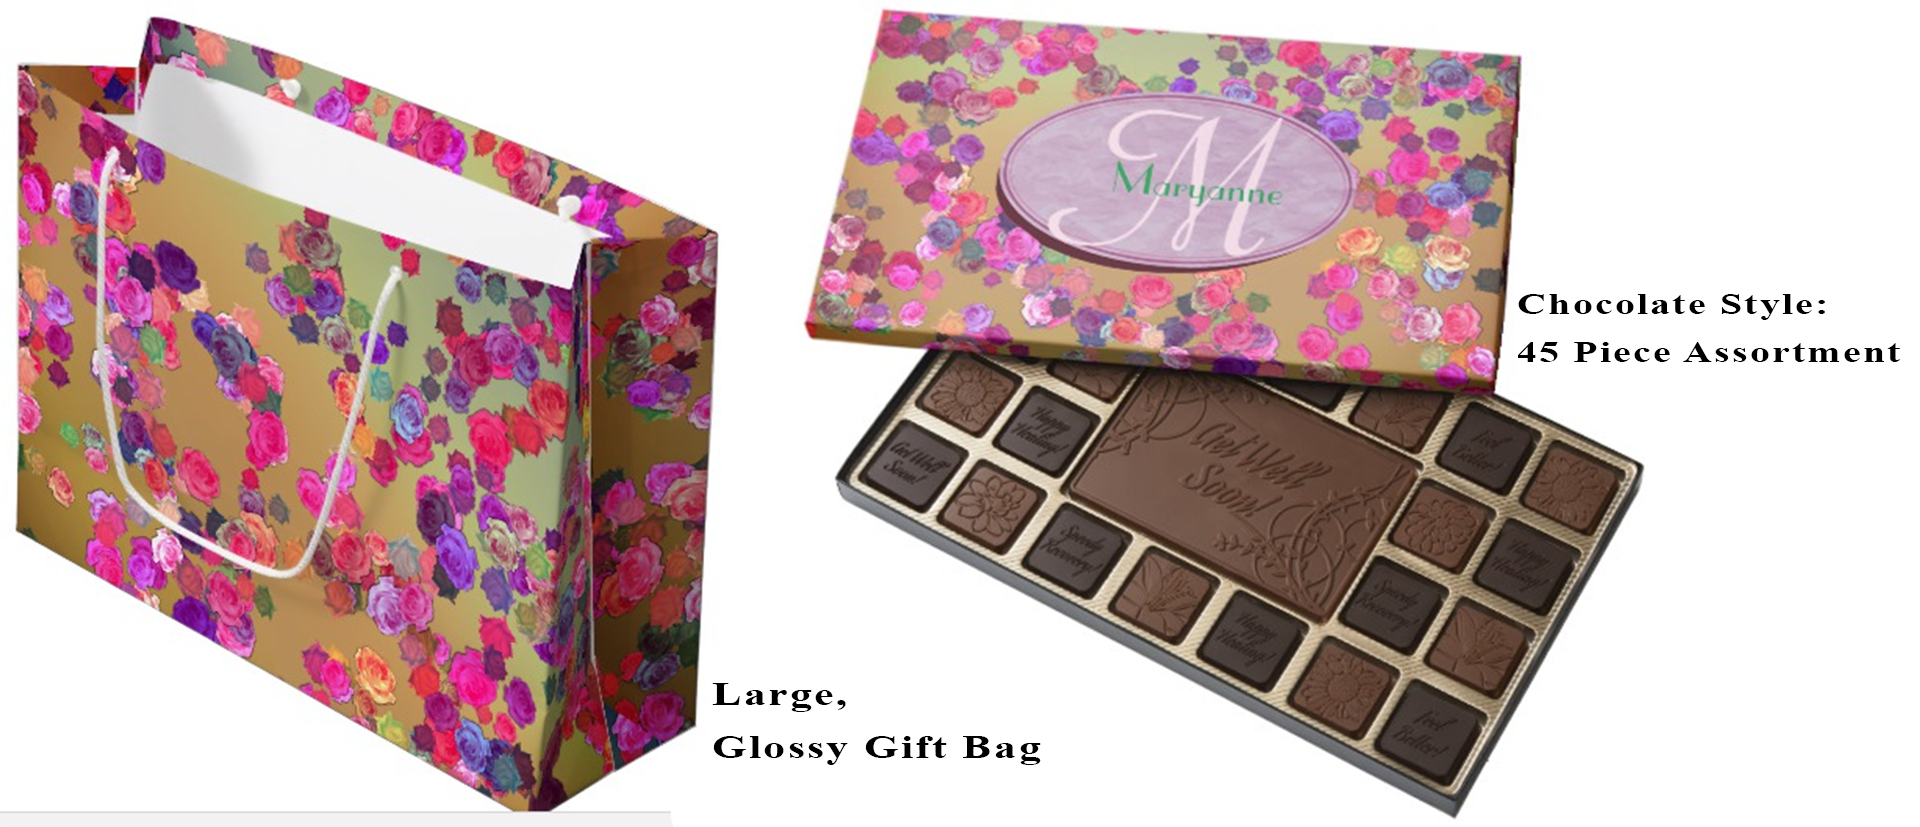 Gift Bag and Box of Chocolates